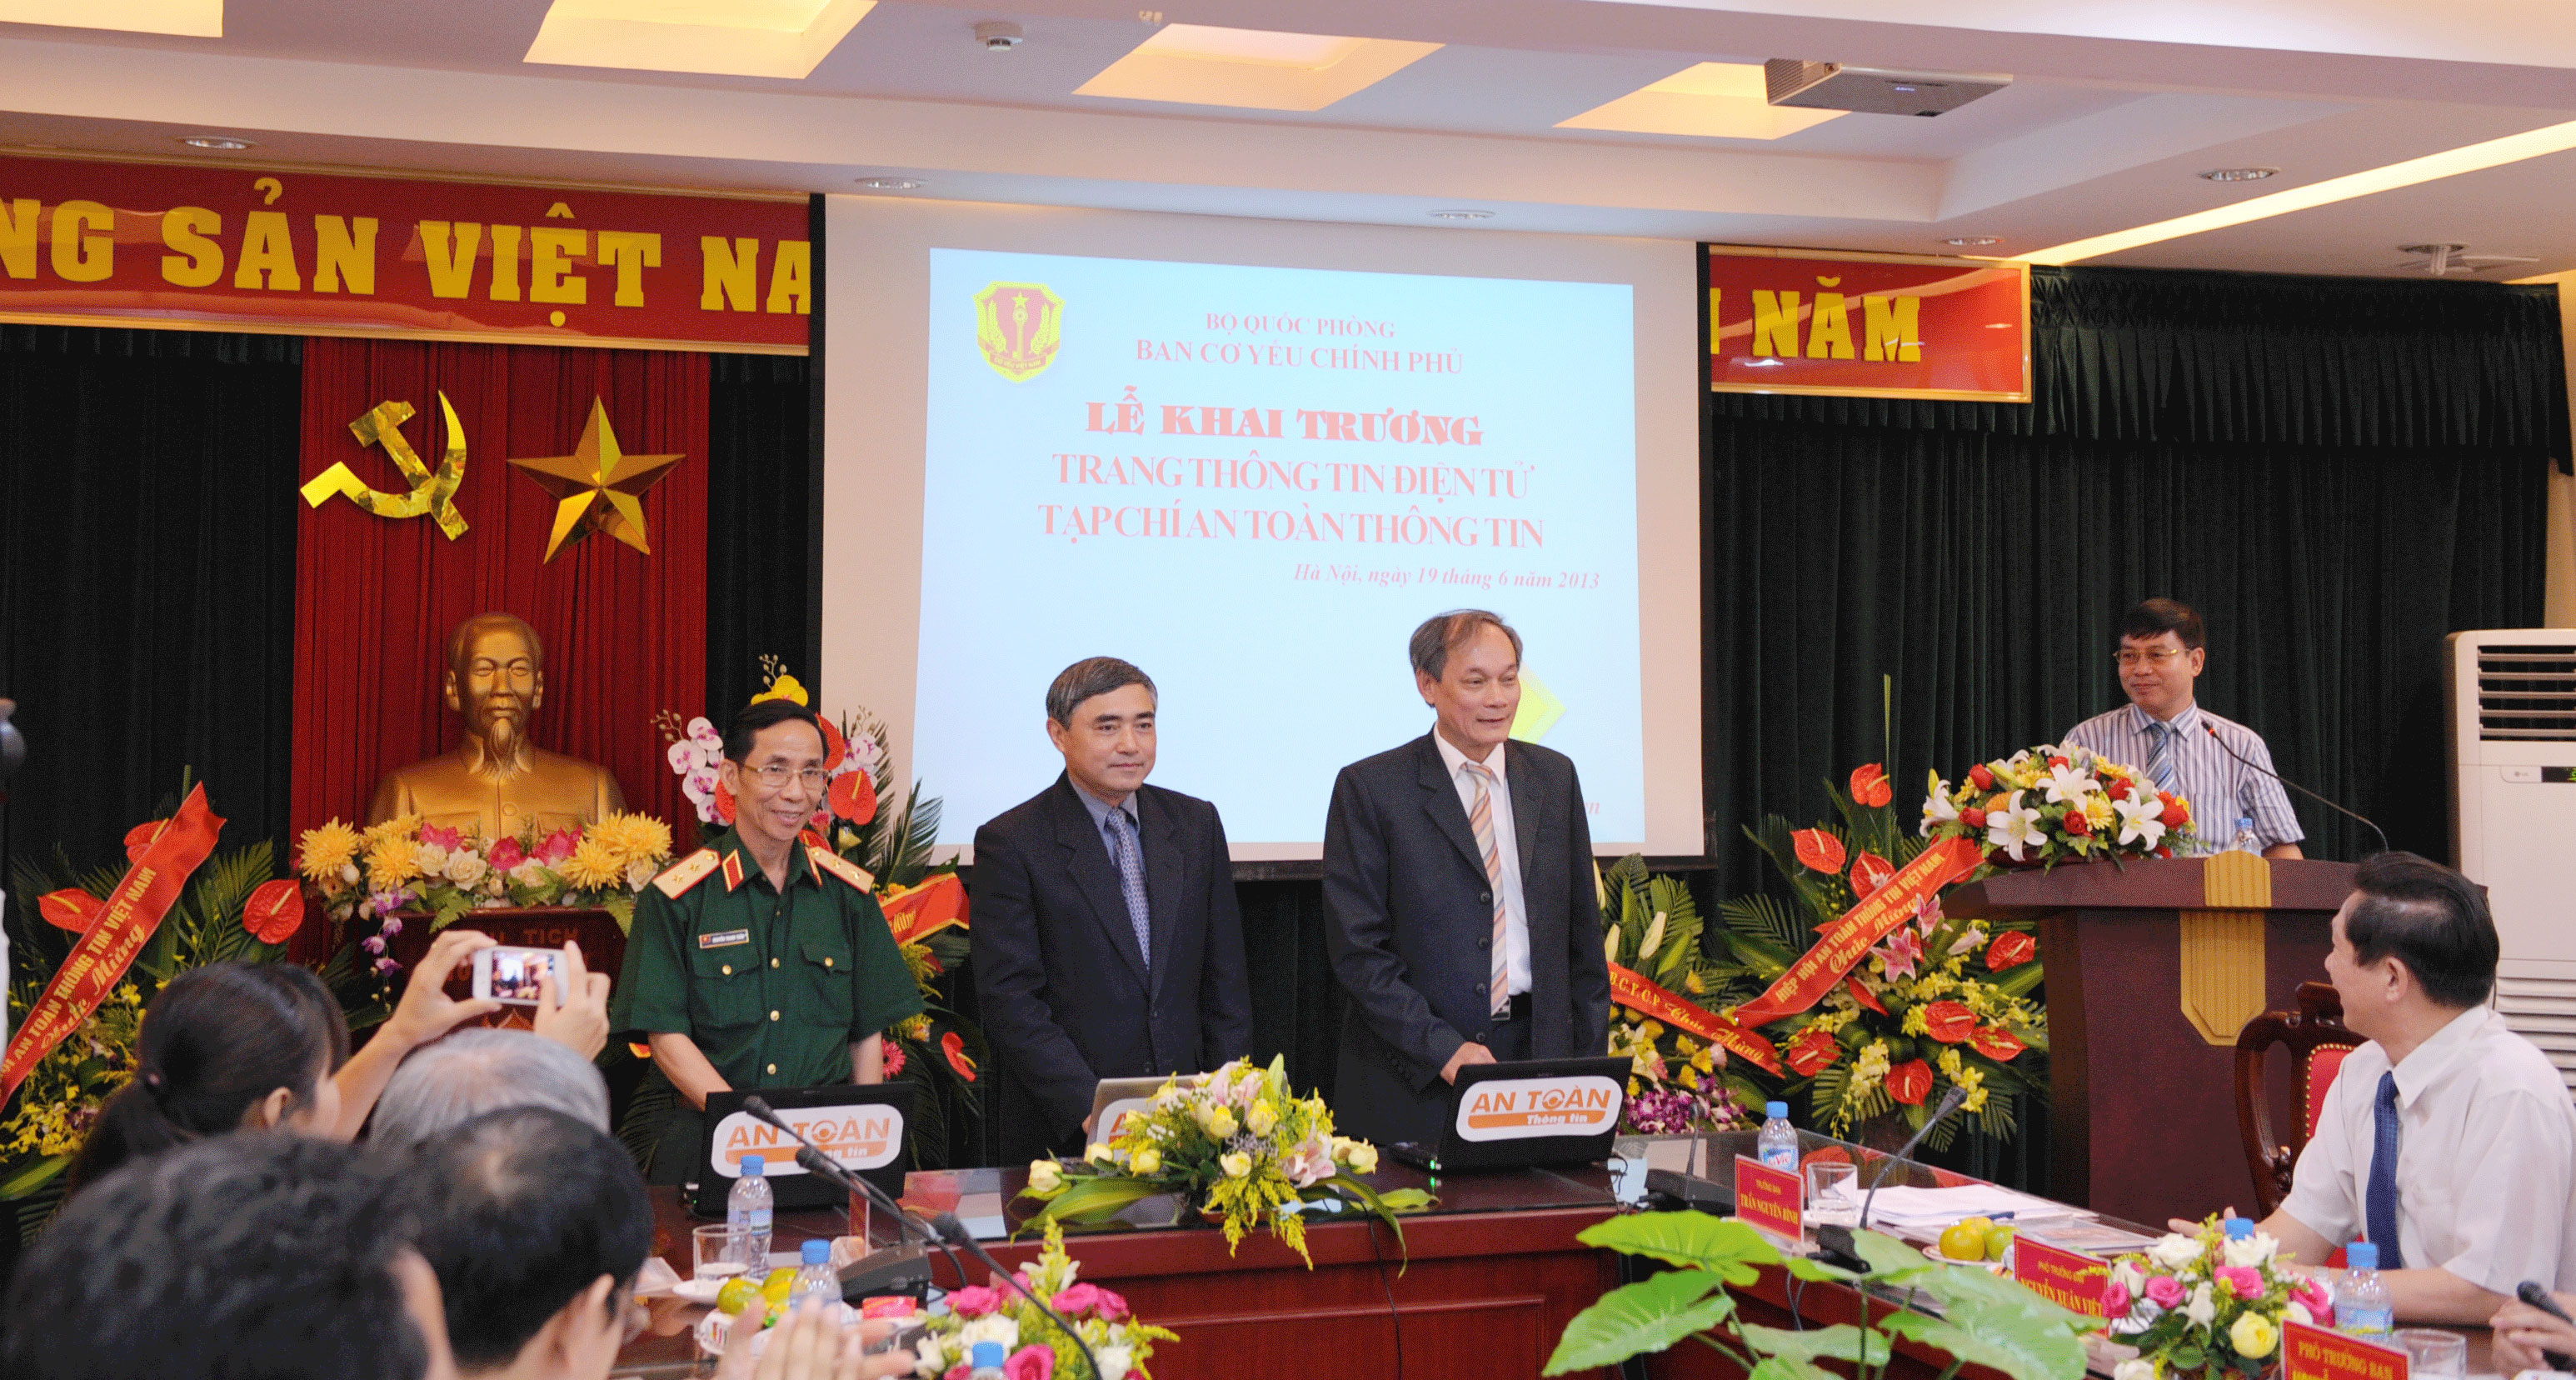 Ban Cơ yếu Chính phủ tổ chức Lễ khai trương Trang thông tin điện tử  Tạp chí An toàn thông tin